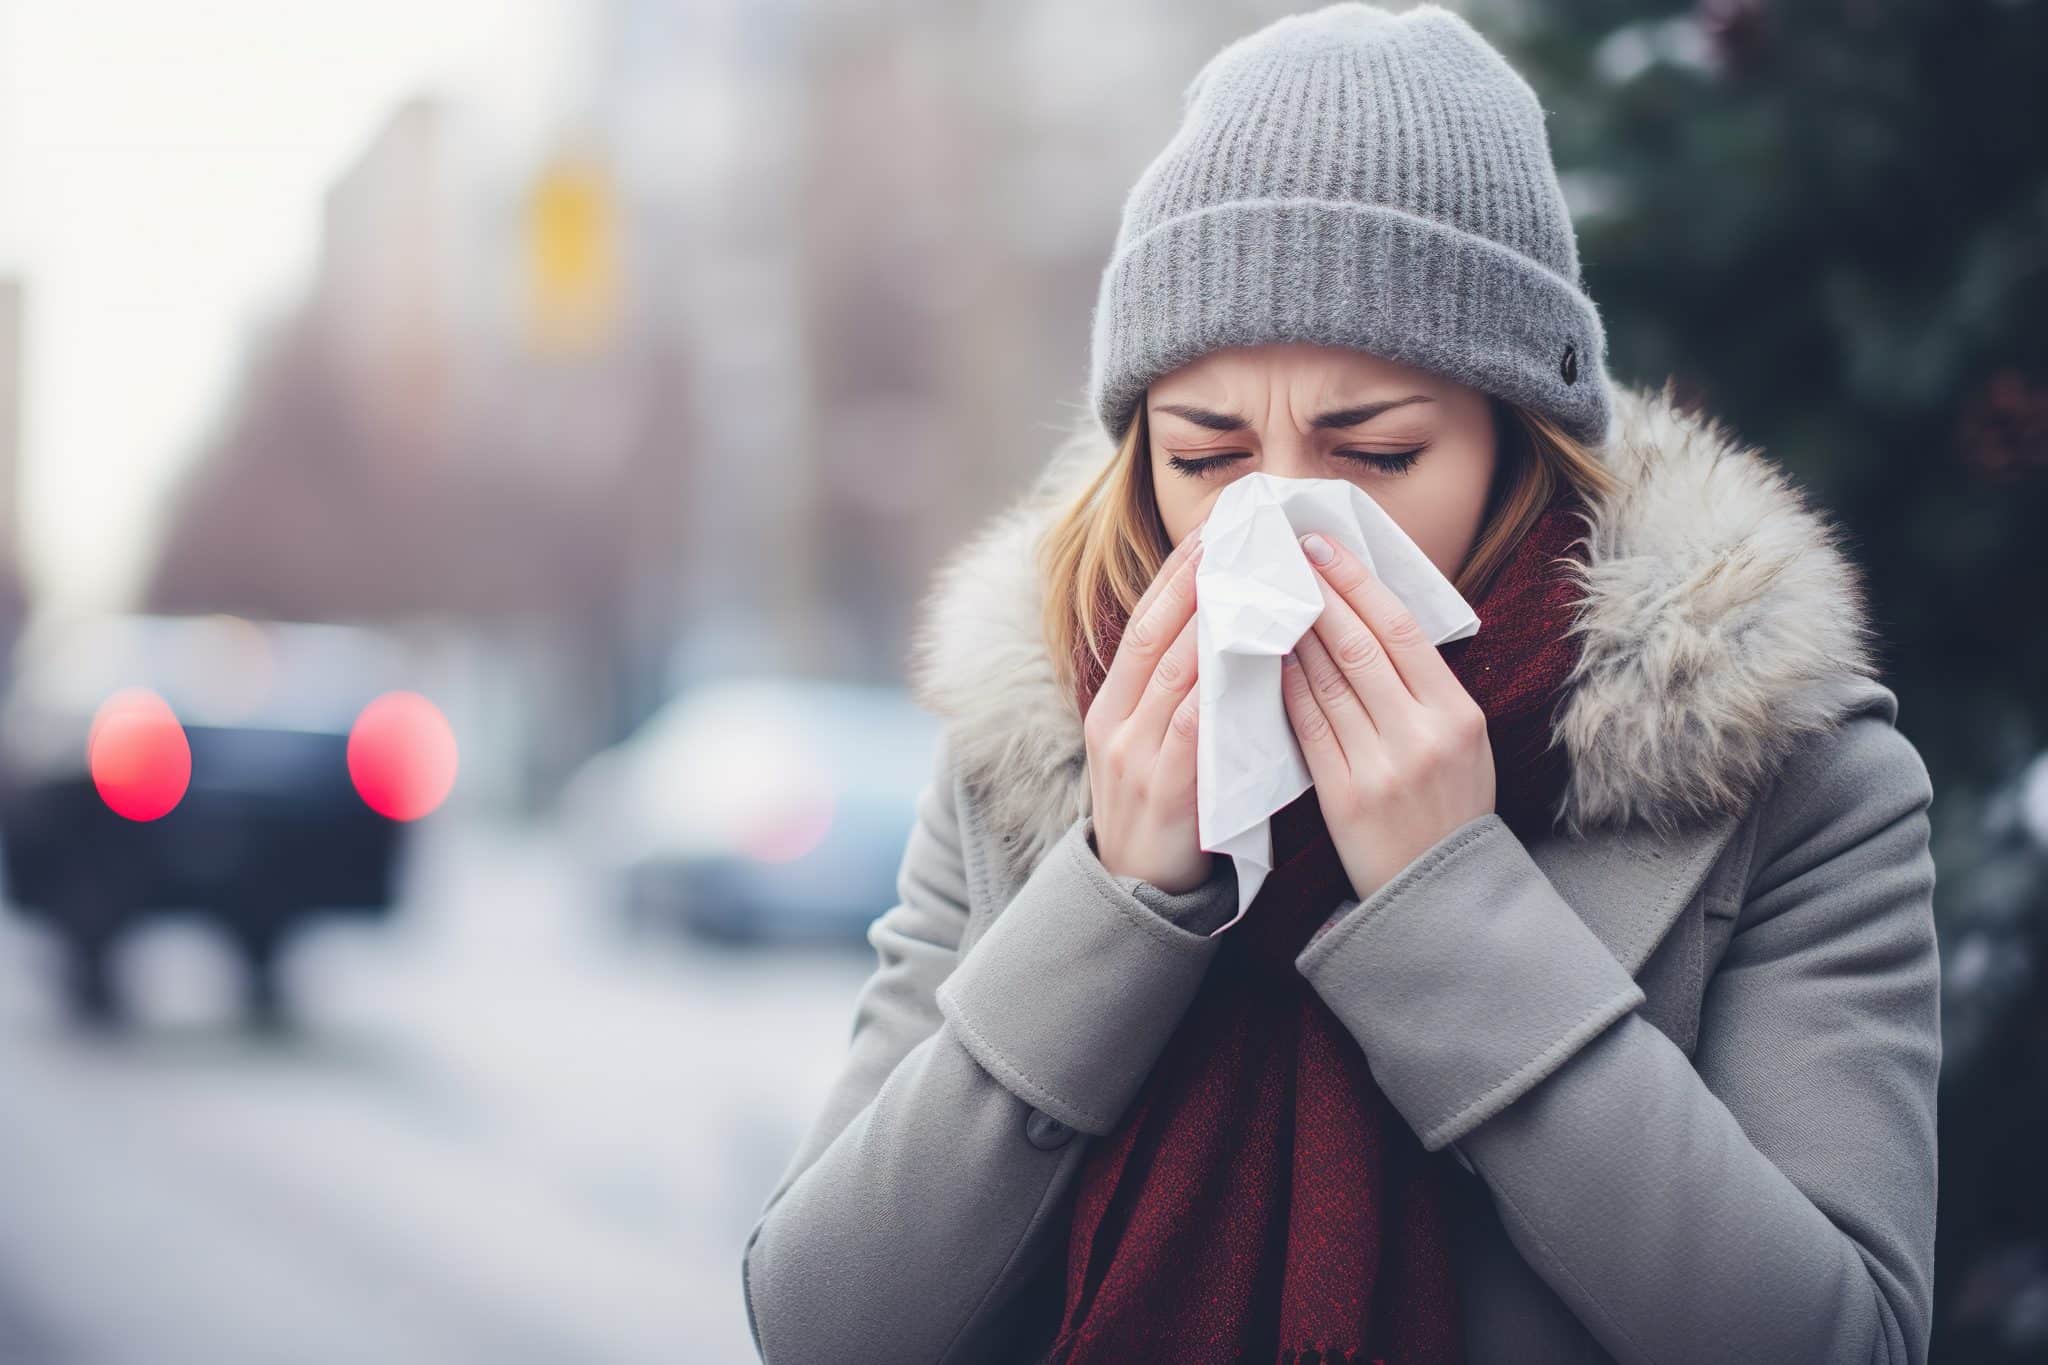 Frau mit einer Erkältung draußen mit Taschentuch im Herbst und Winter. Darstellung von Schnupfen oder einer Grippe im Alltag. Nase putzen bei kaltem Wetter.